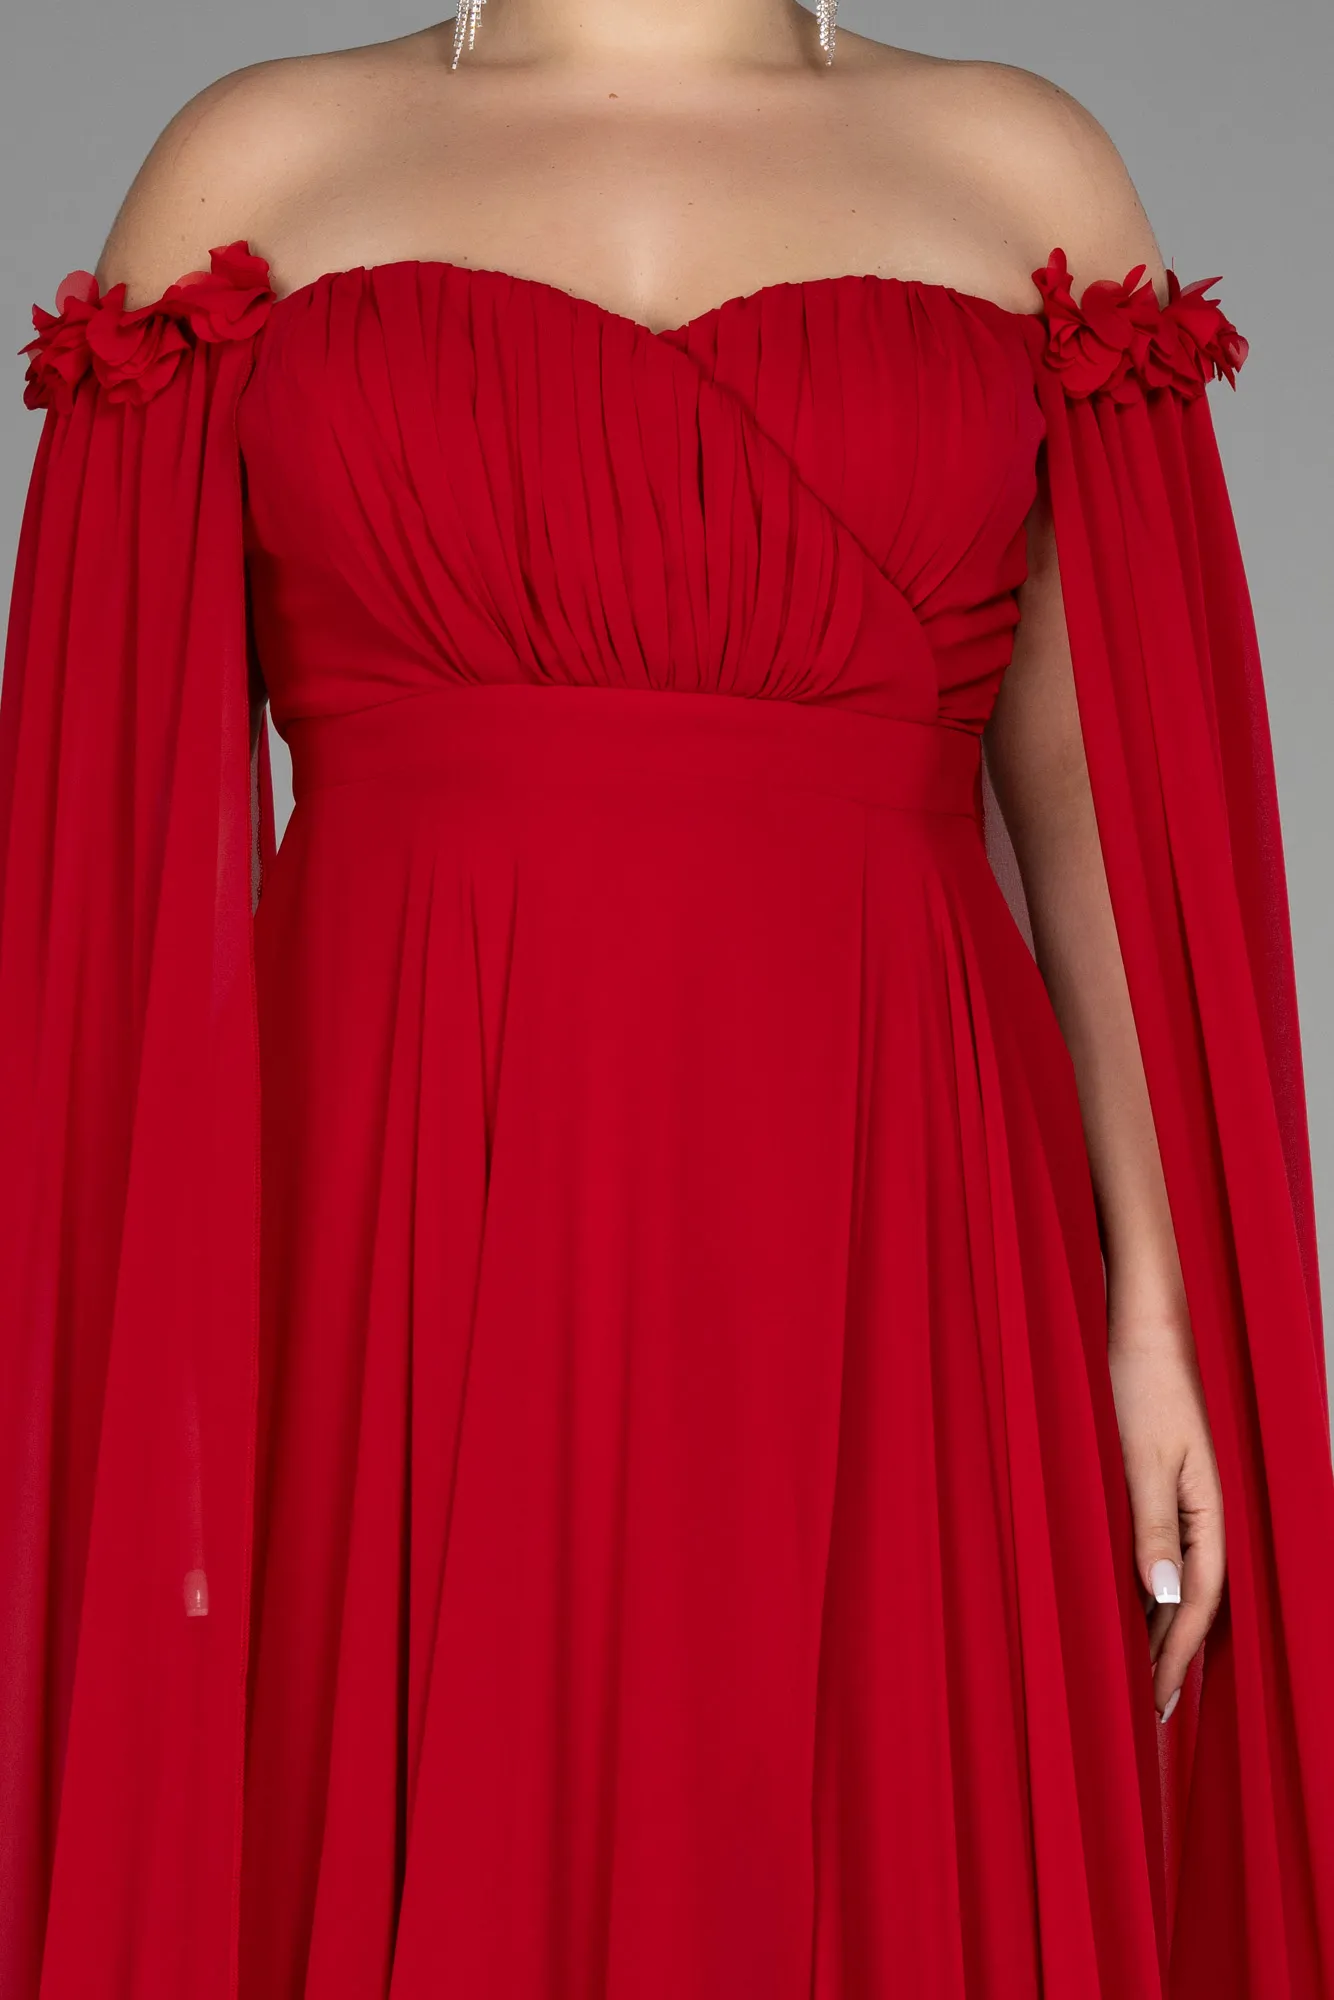 Red-Long Chiffon Plus Size Evening Dress ABU3464